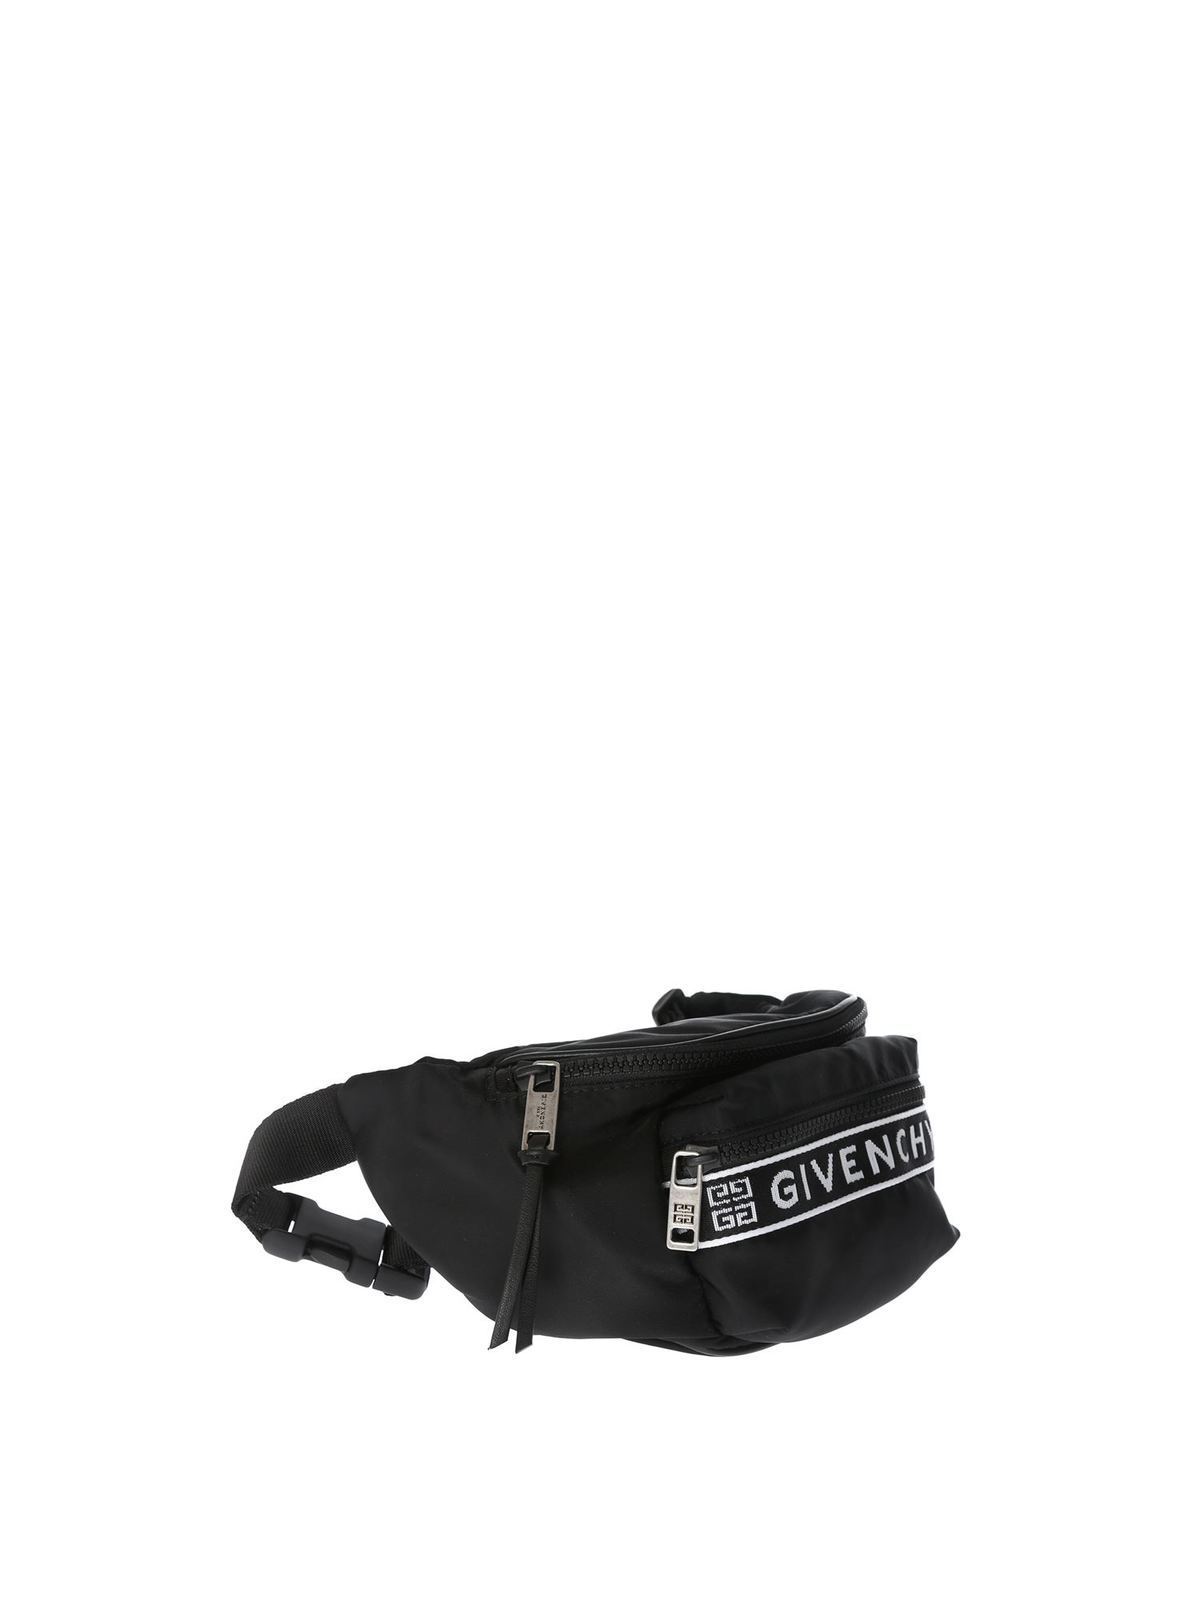 Belt bags Givenchy - 4G black waist bag - BK5037K0B5004 | iKRIX.com